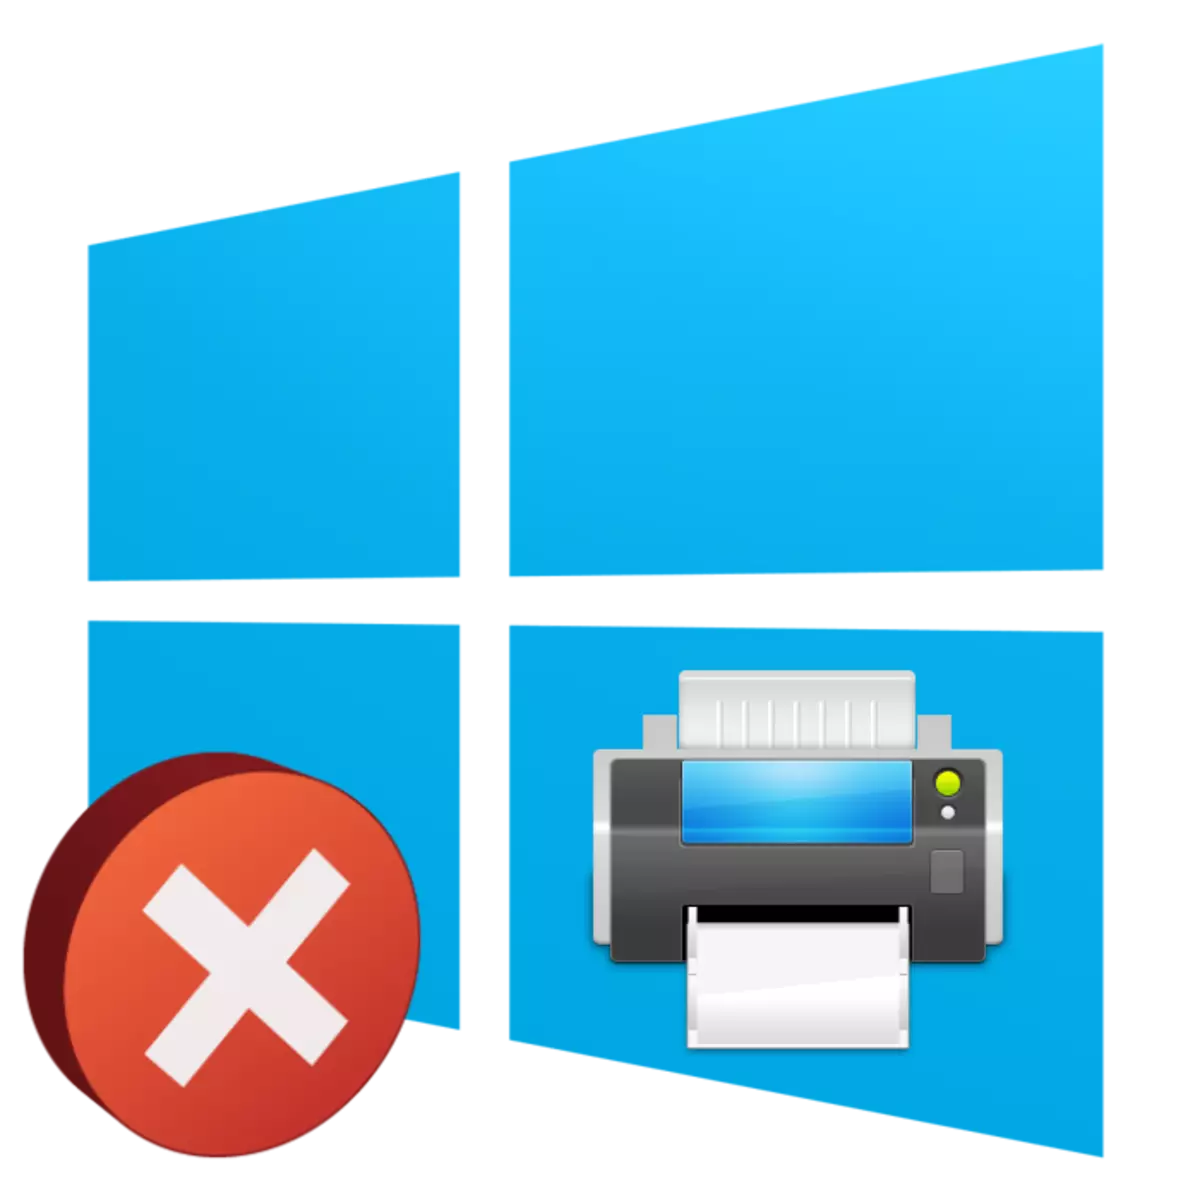 Det lokale skriveundersystemet utføres ikke i Windows 10